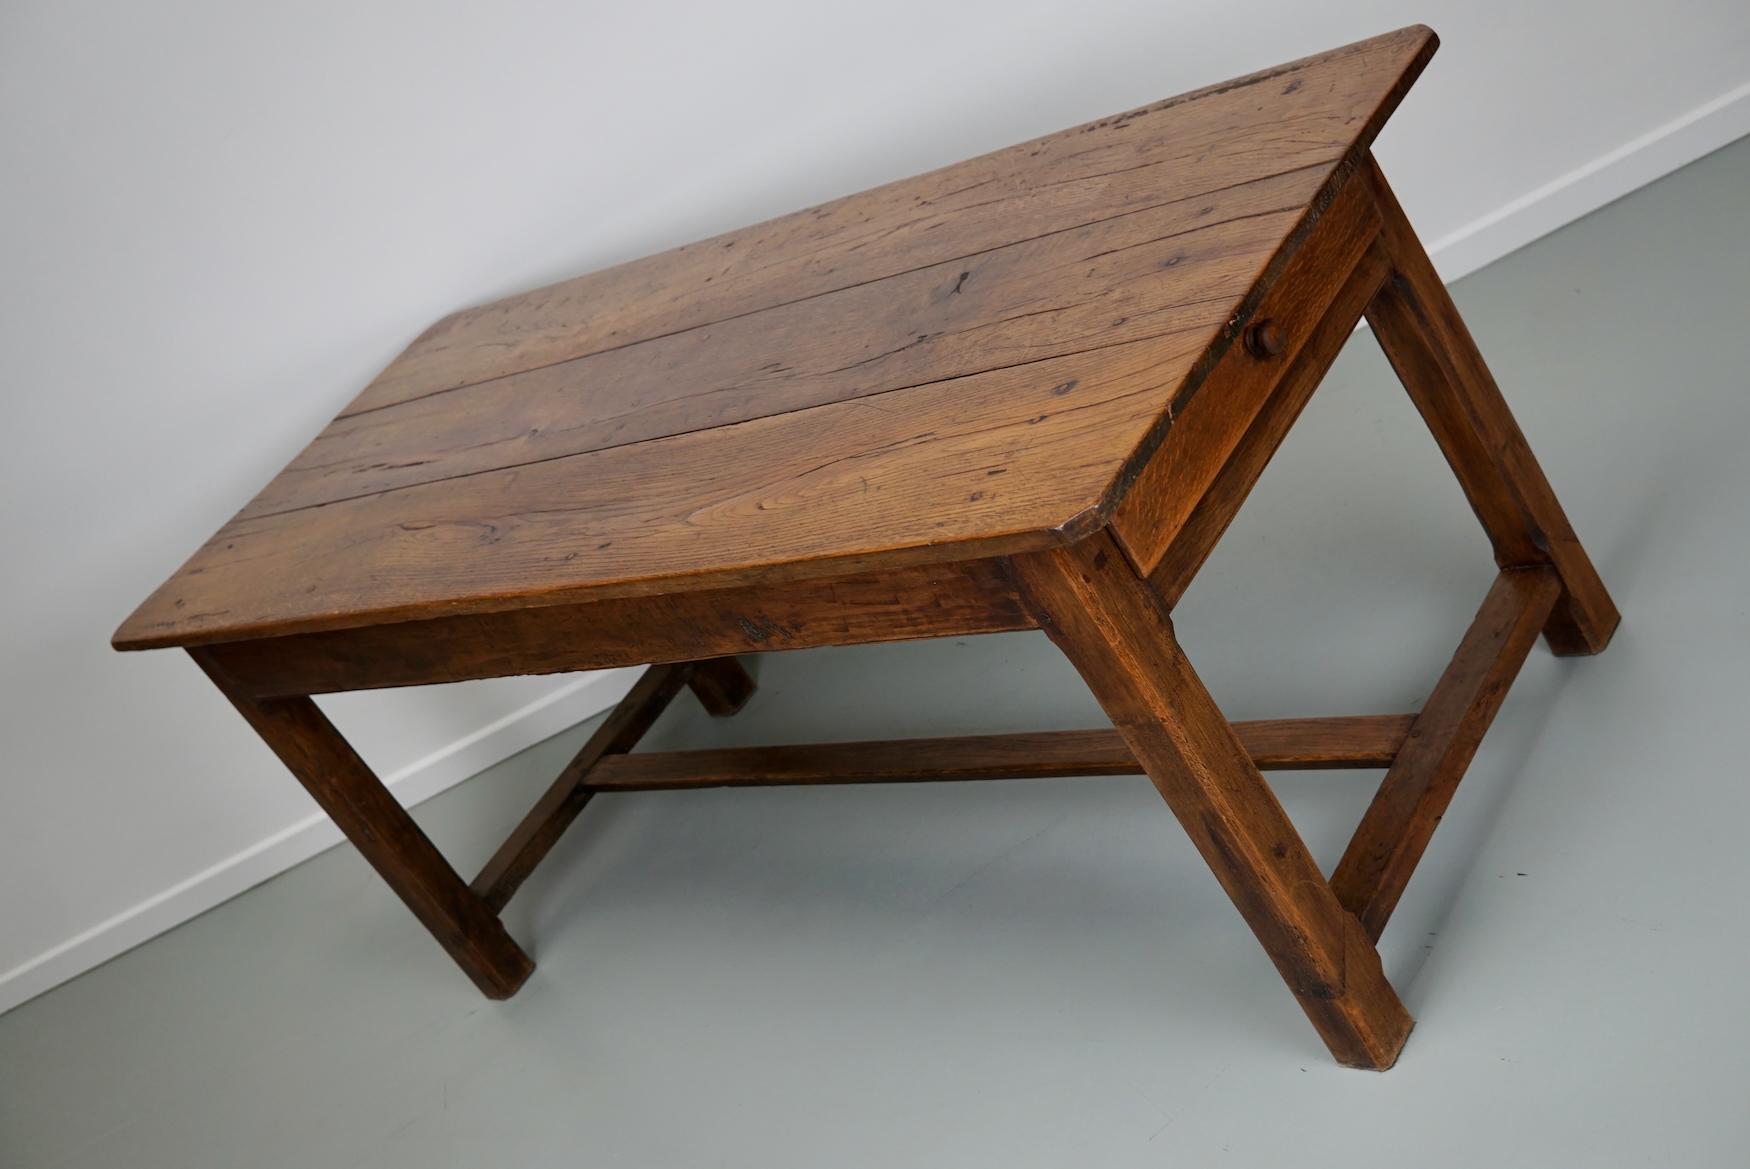 Cette élégante table a été fabriquée dans le sud de la France au milieu du XIXe siècle. Le plateau de la table est constitué de trois grandes plaques de bois. La table a été fabriquée en chêne et en châtaignier massifs avec de magnifiques veinures.